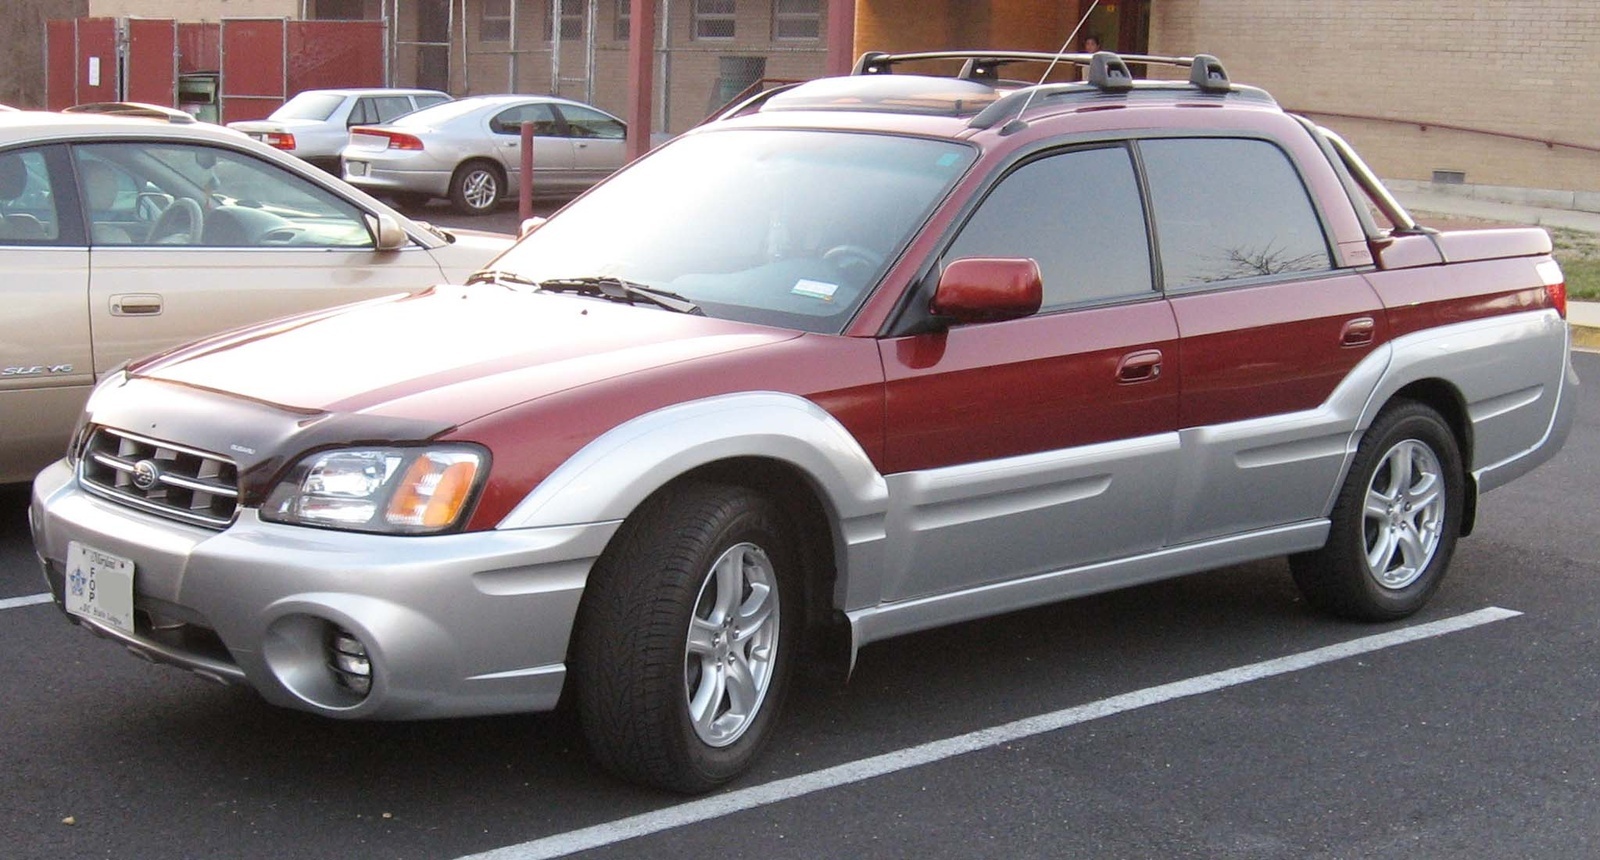 2006 Subaru Baja: Prices, Reviews & Pictures - CarGurus